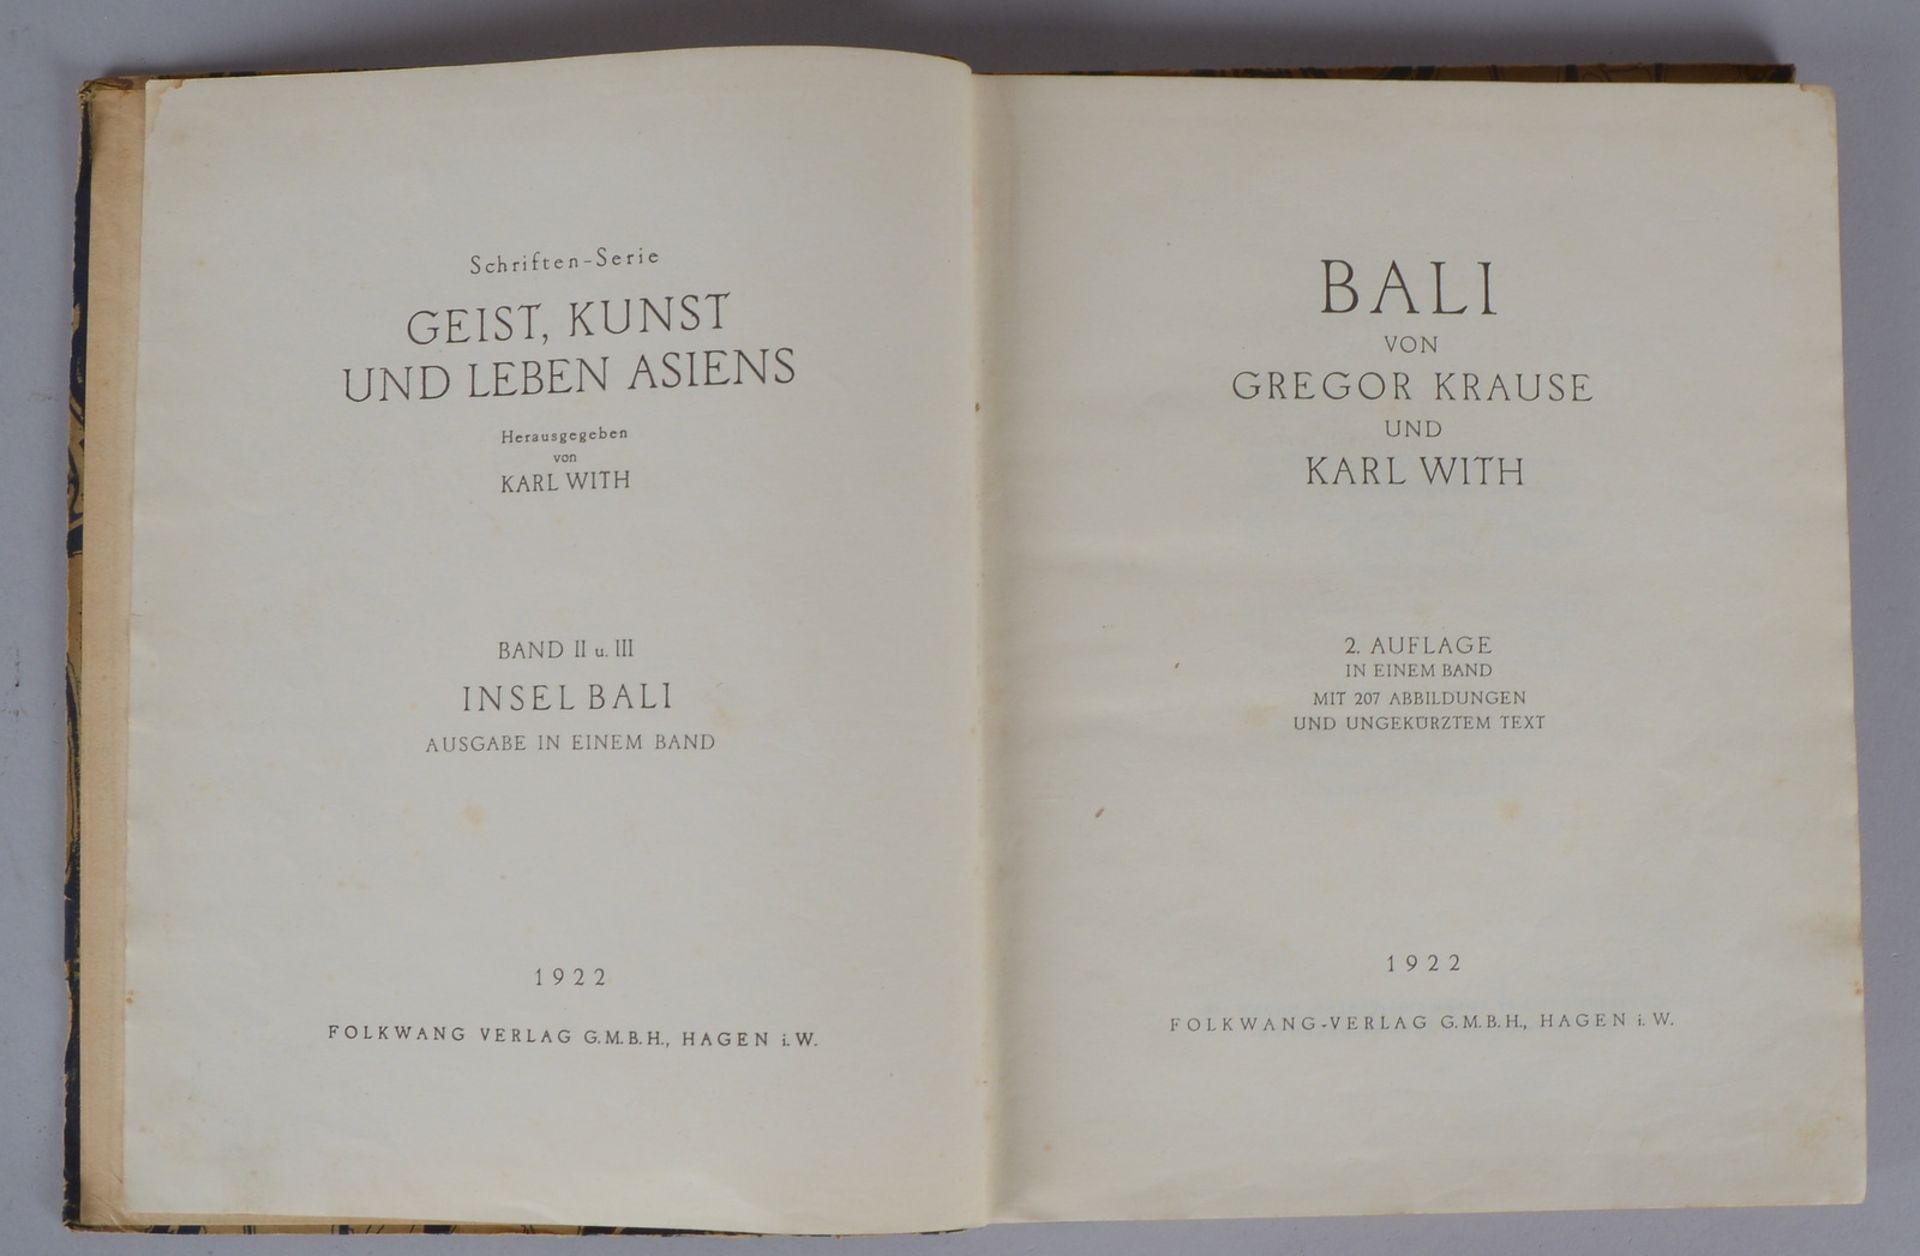 Krause, Gregor, und Wirth, Karl, 'Bali' (Hagen: Folkwang-Verlag, 1922), Bd. I + II